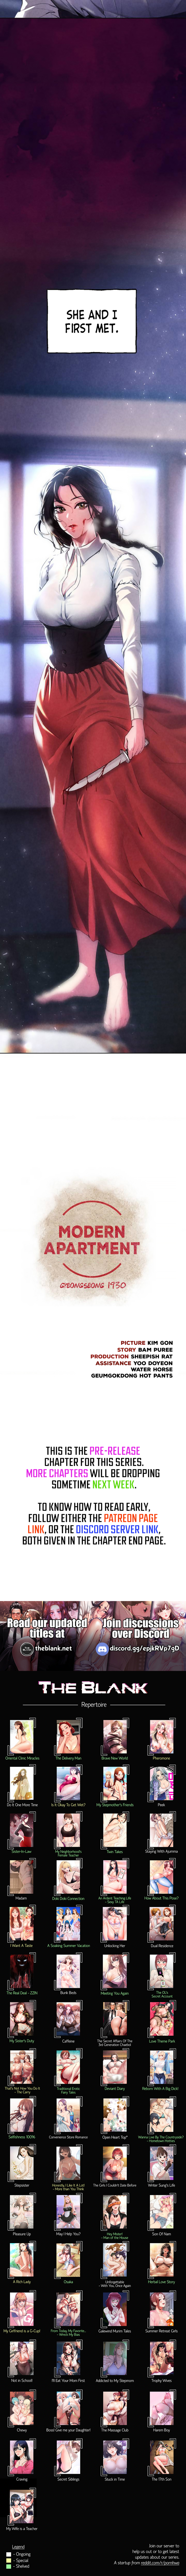 Read manhwa Modern Apartment, Gyeongseong 1930 Chapter 1 - SauceManhwa.com